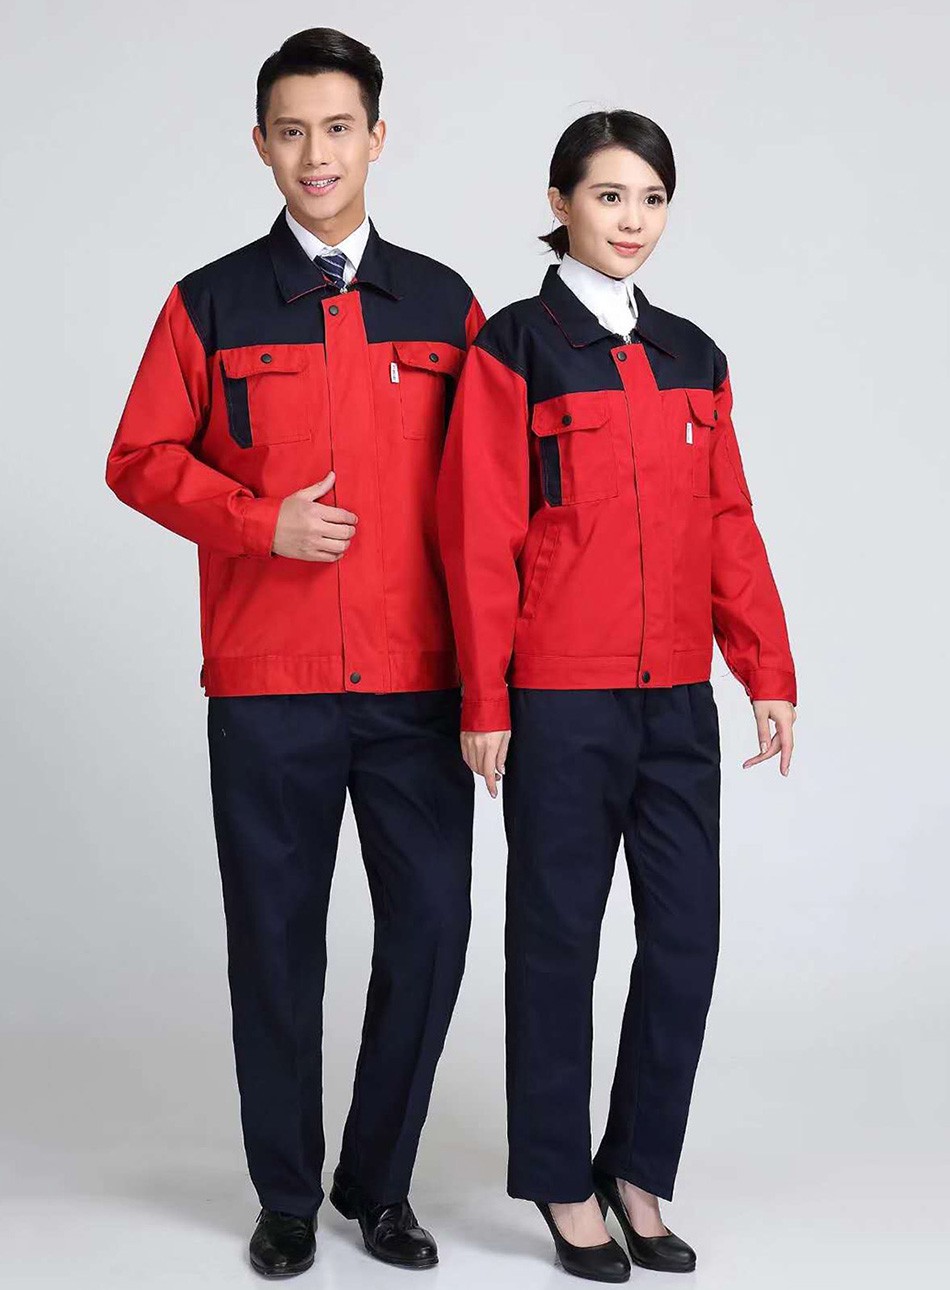 厂家直销上海工作服 绣logo印字工作服 冬季长袖工装定做厂家